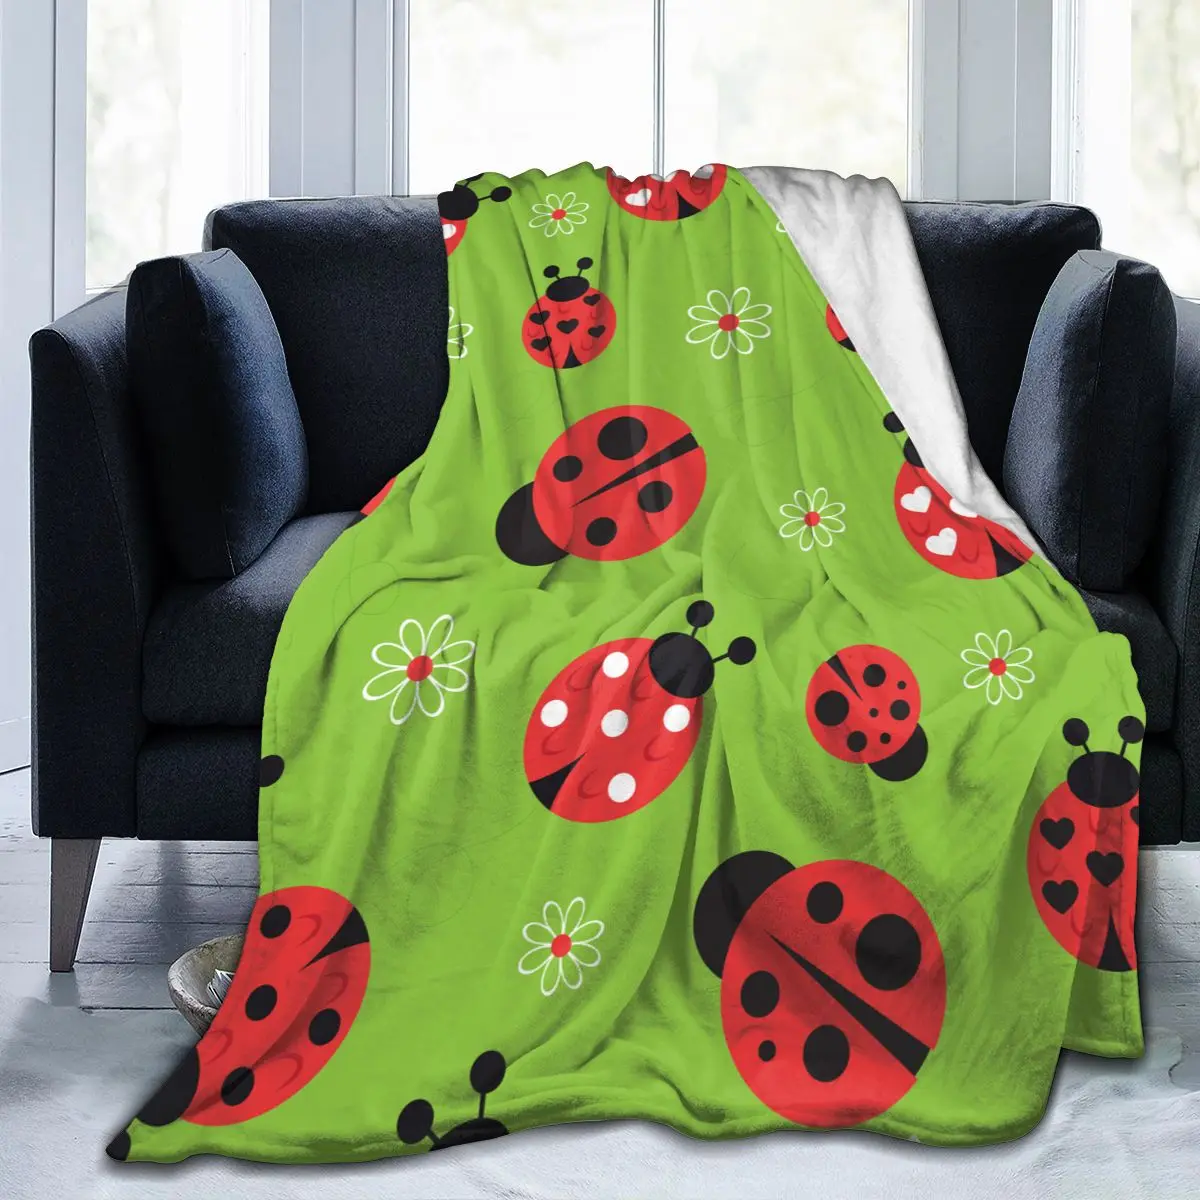 

Уникальное одеяло для семьи, друзей, абстрактные цветы и божья коровка, прочное супермягкое удобное одеяло для дома, подарок